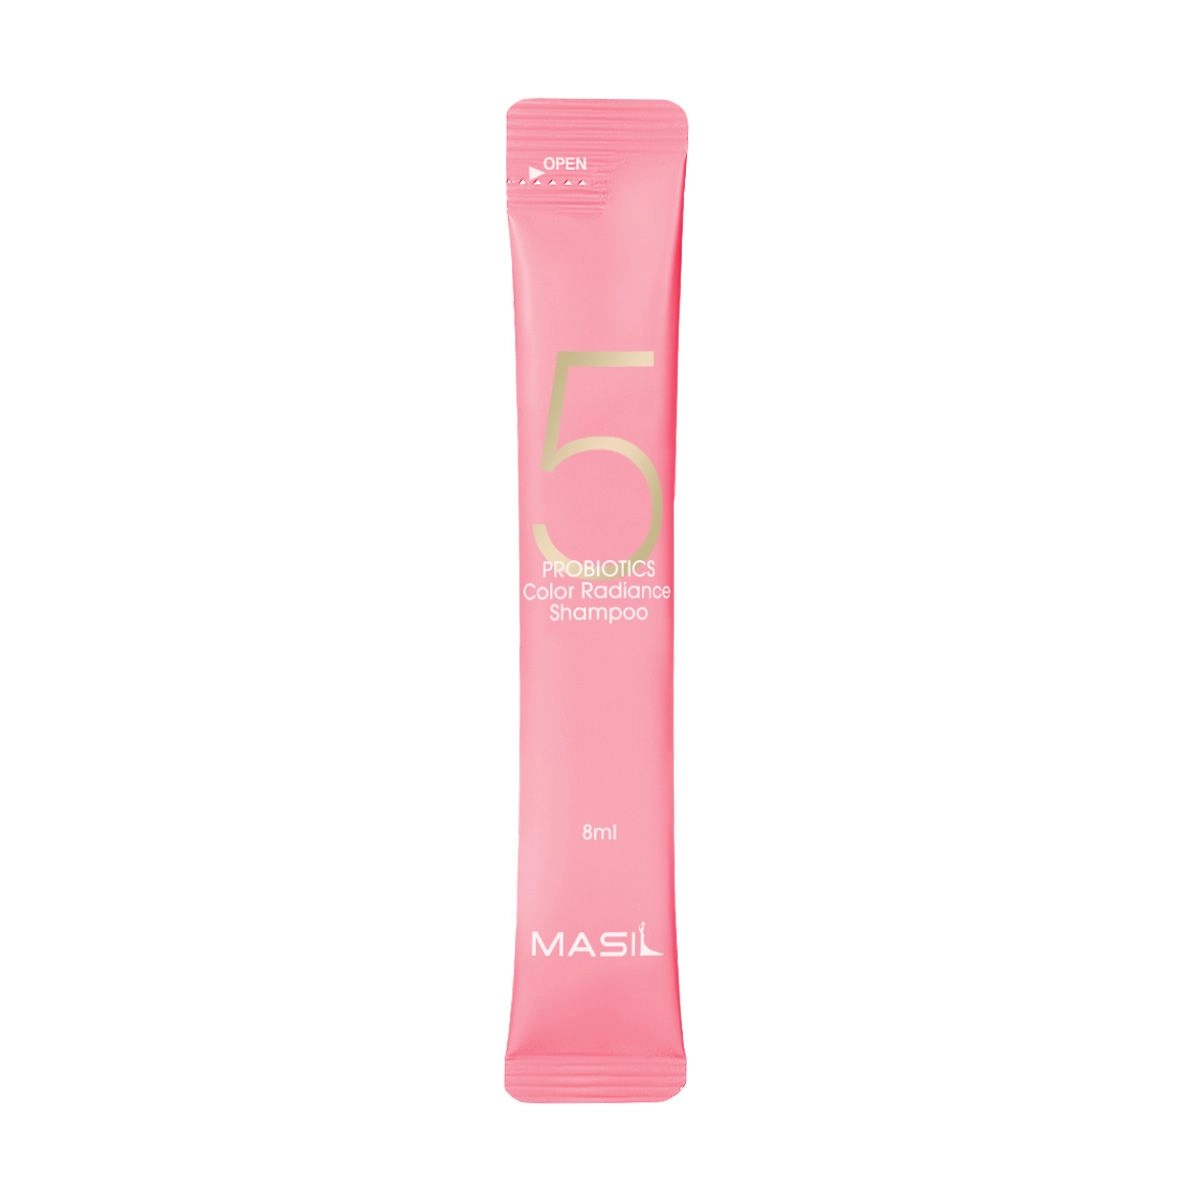 Шампунь для захисту кольору фарбованого волосся з пробіотиками - Masil 5 Probiotics Color Radiance Shampoo, 8 мл - фото N3